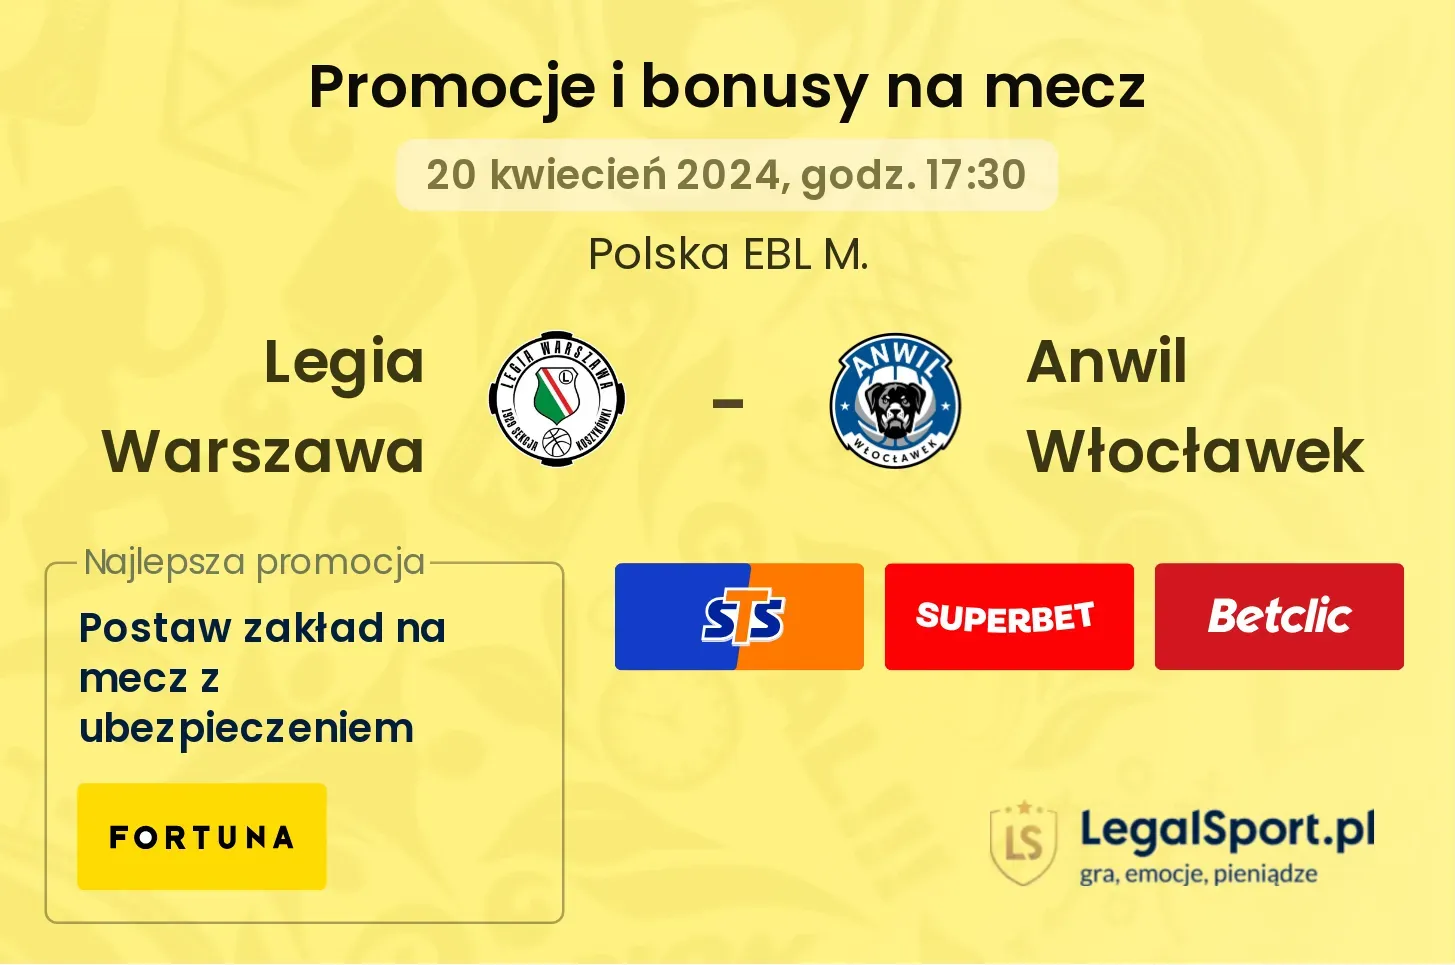 Legia Warszawa - Anwil Włocławek promocje bonusy na mecz